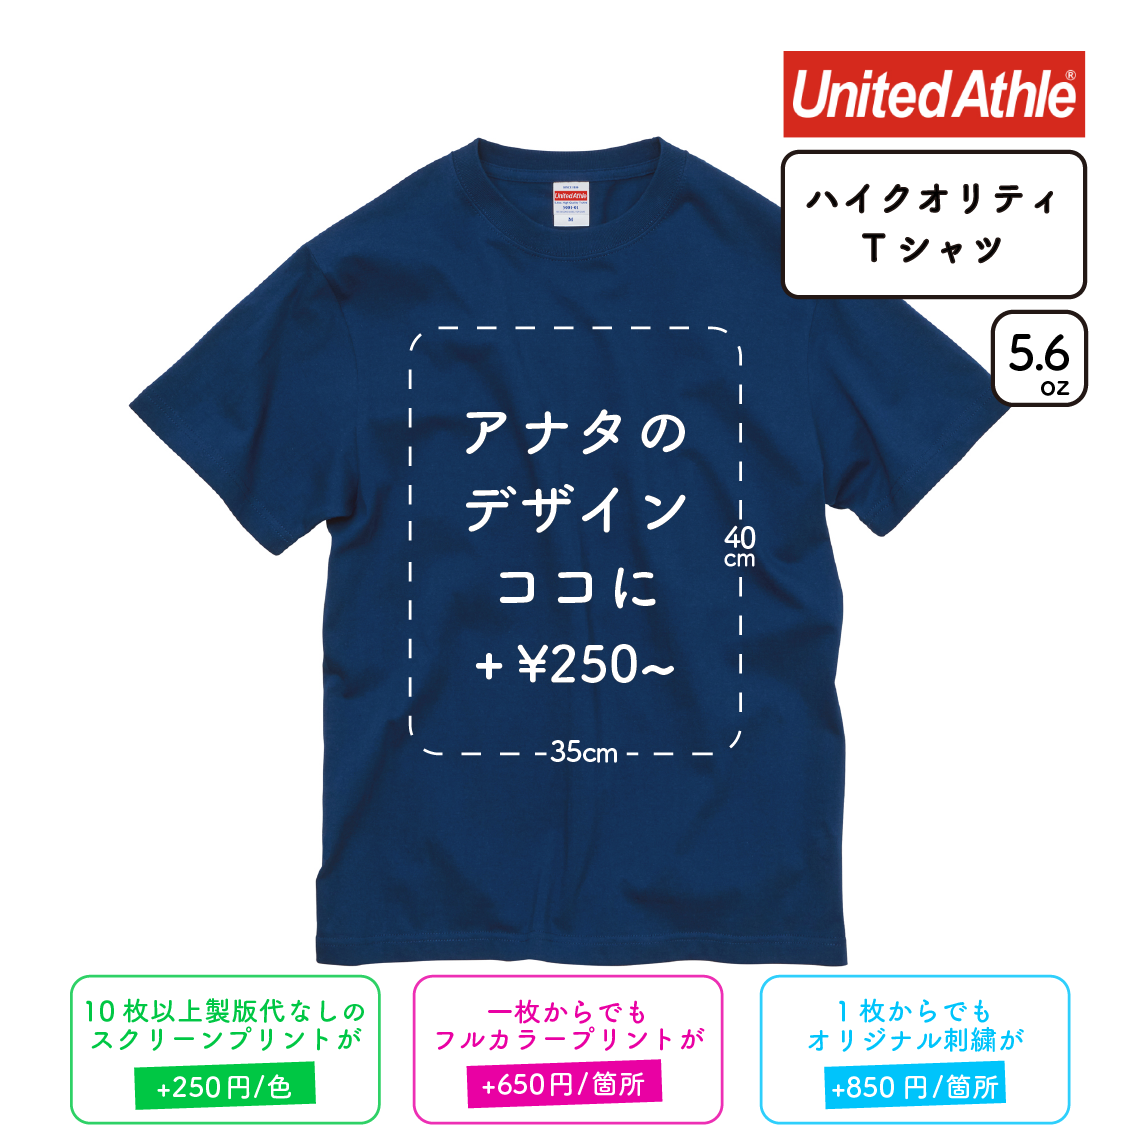 5.6oz ハイクオリティ Tシャツ アダルト (UA-5001)